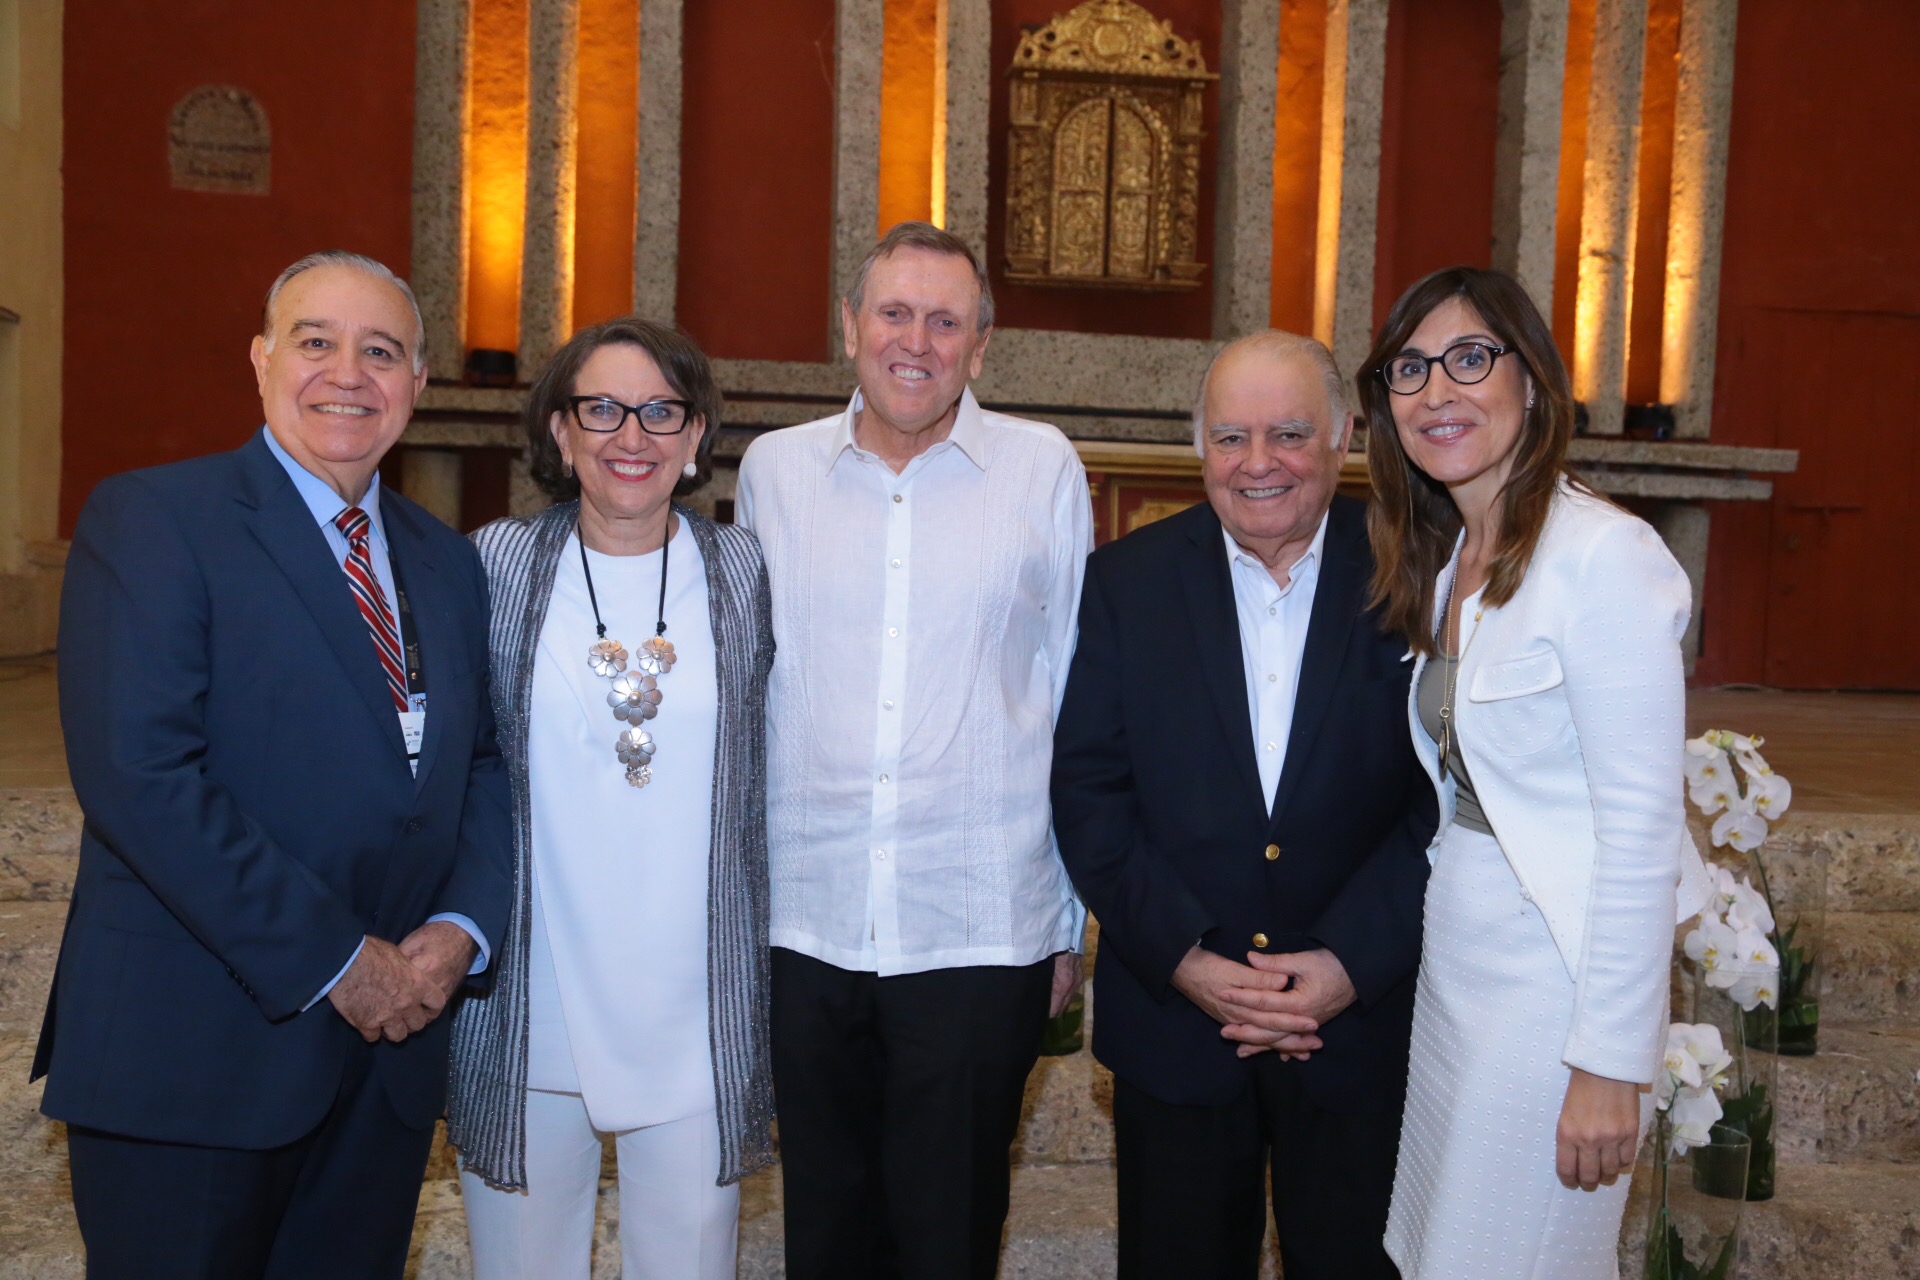 El CEAL Ibérico homenajea a los galardonados del Premio Enrique V. Iglesias en Cartagena de Indias